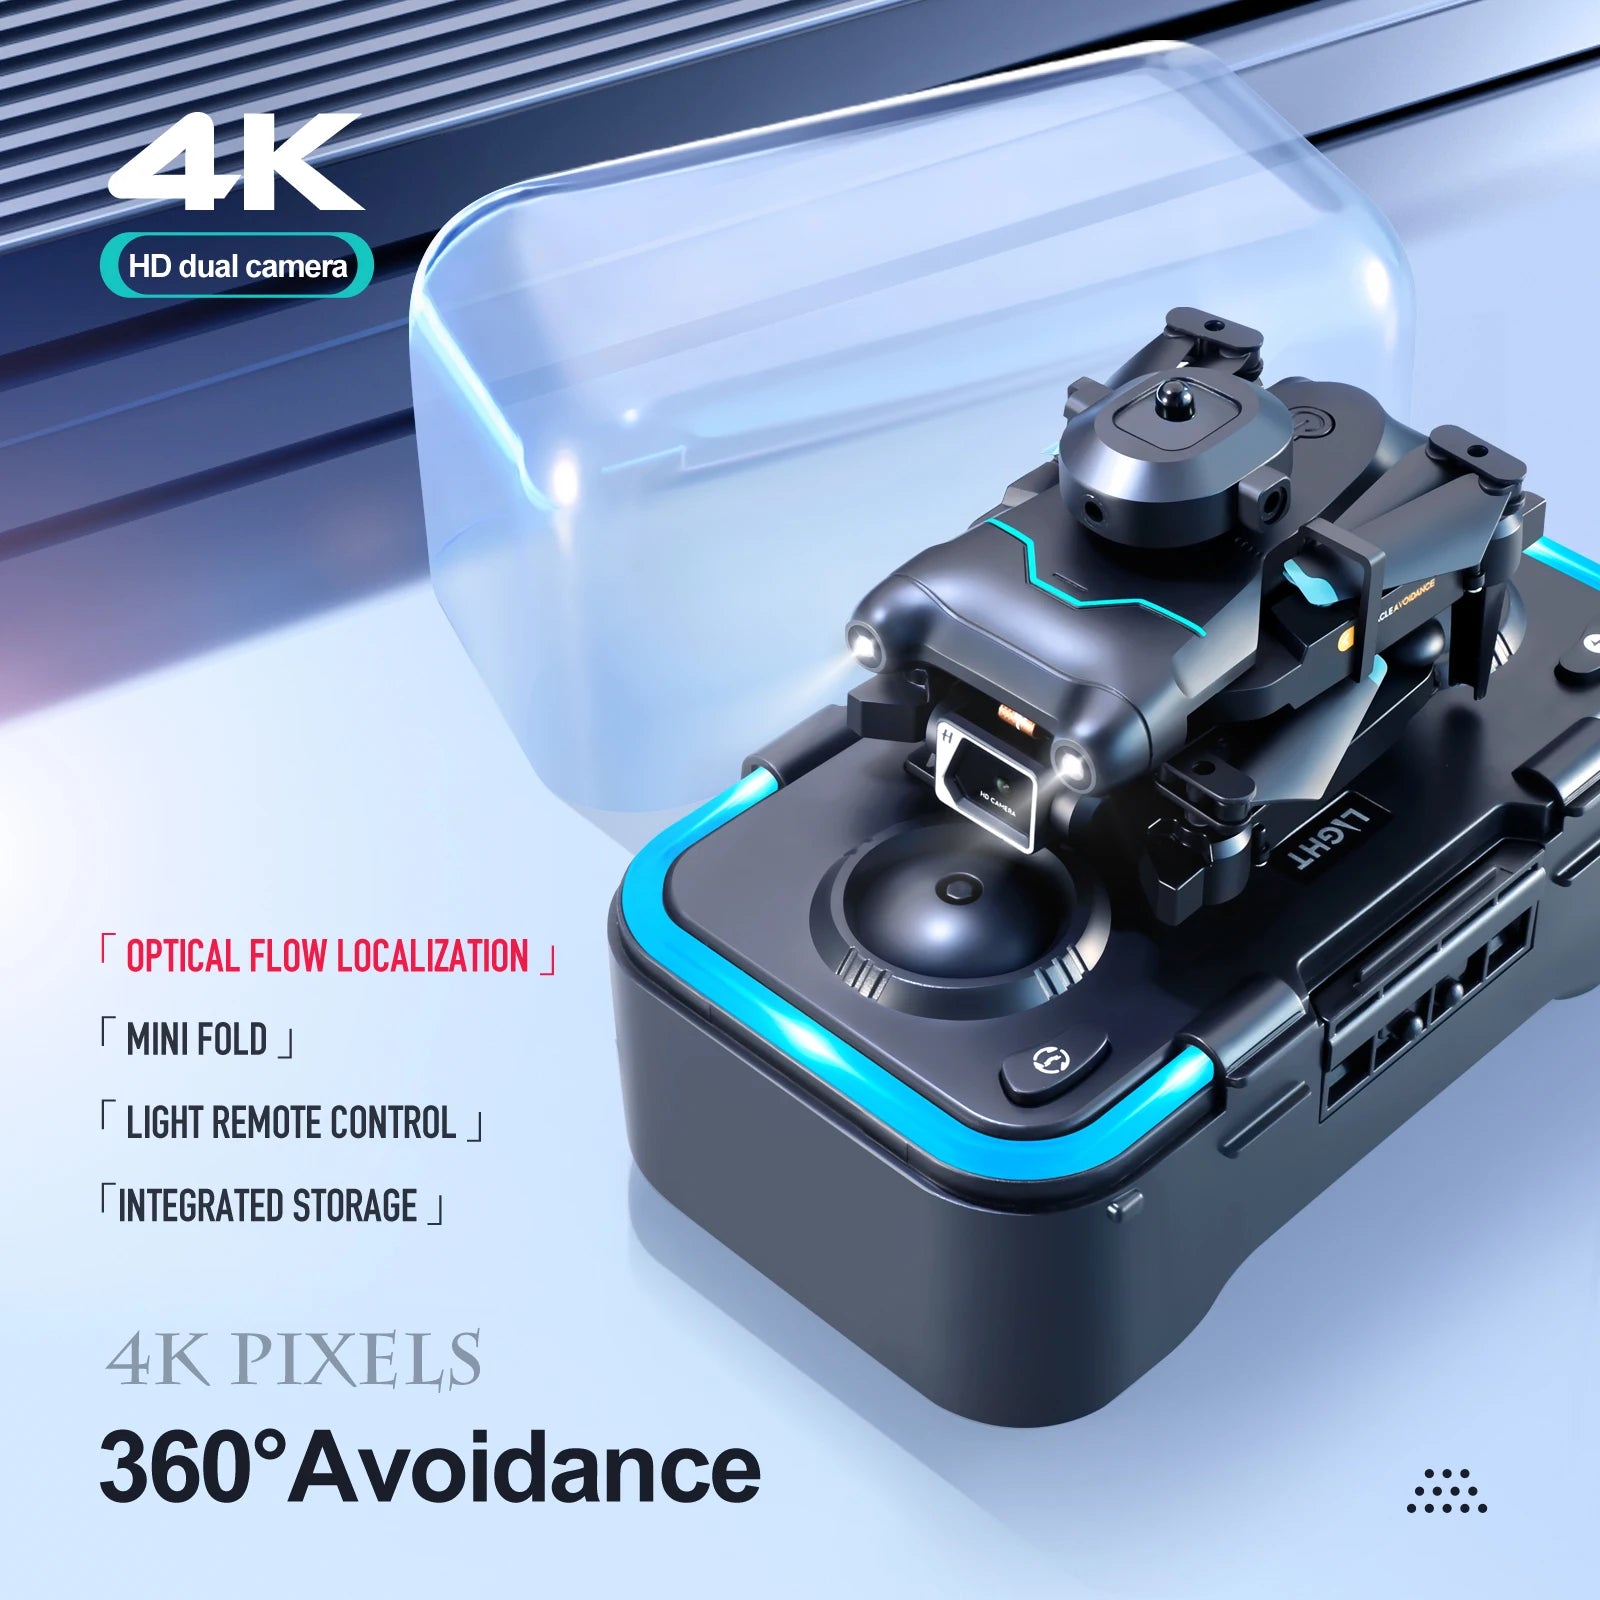 4k hd dual camera optical flow localization . mini